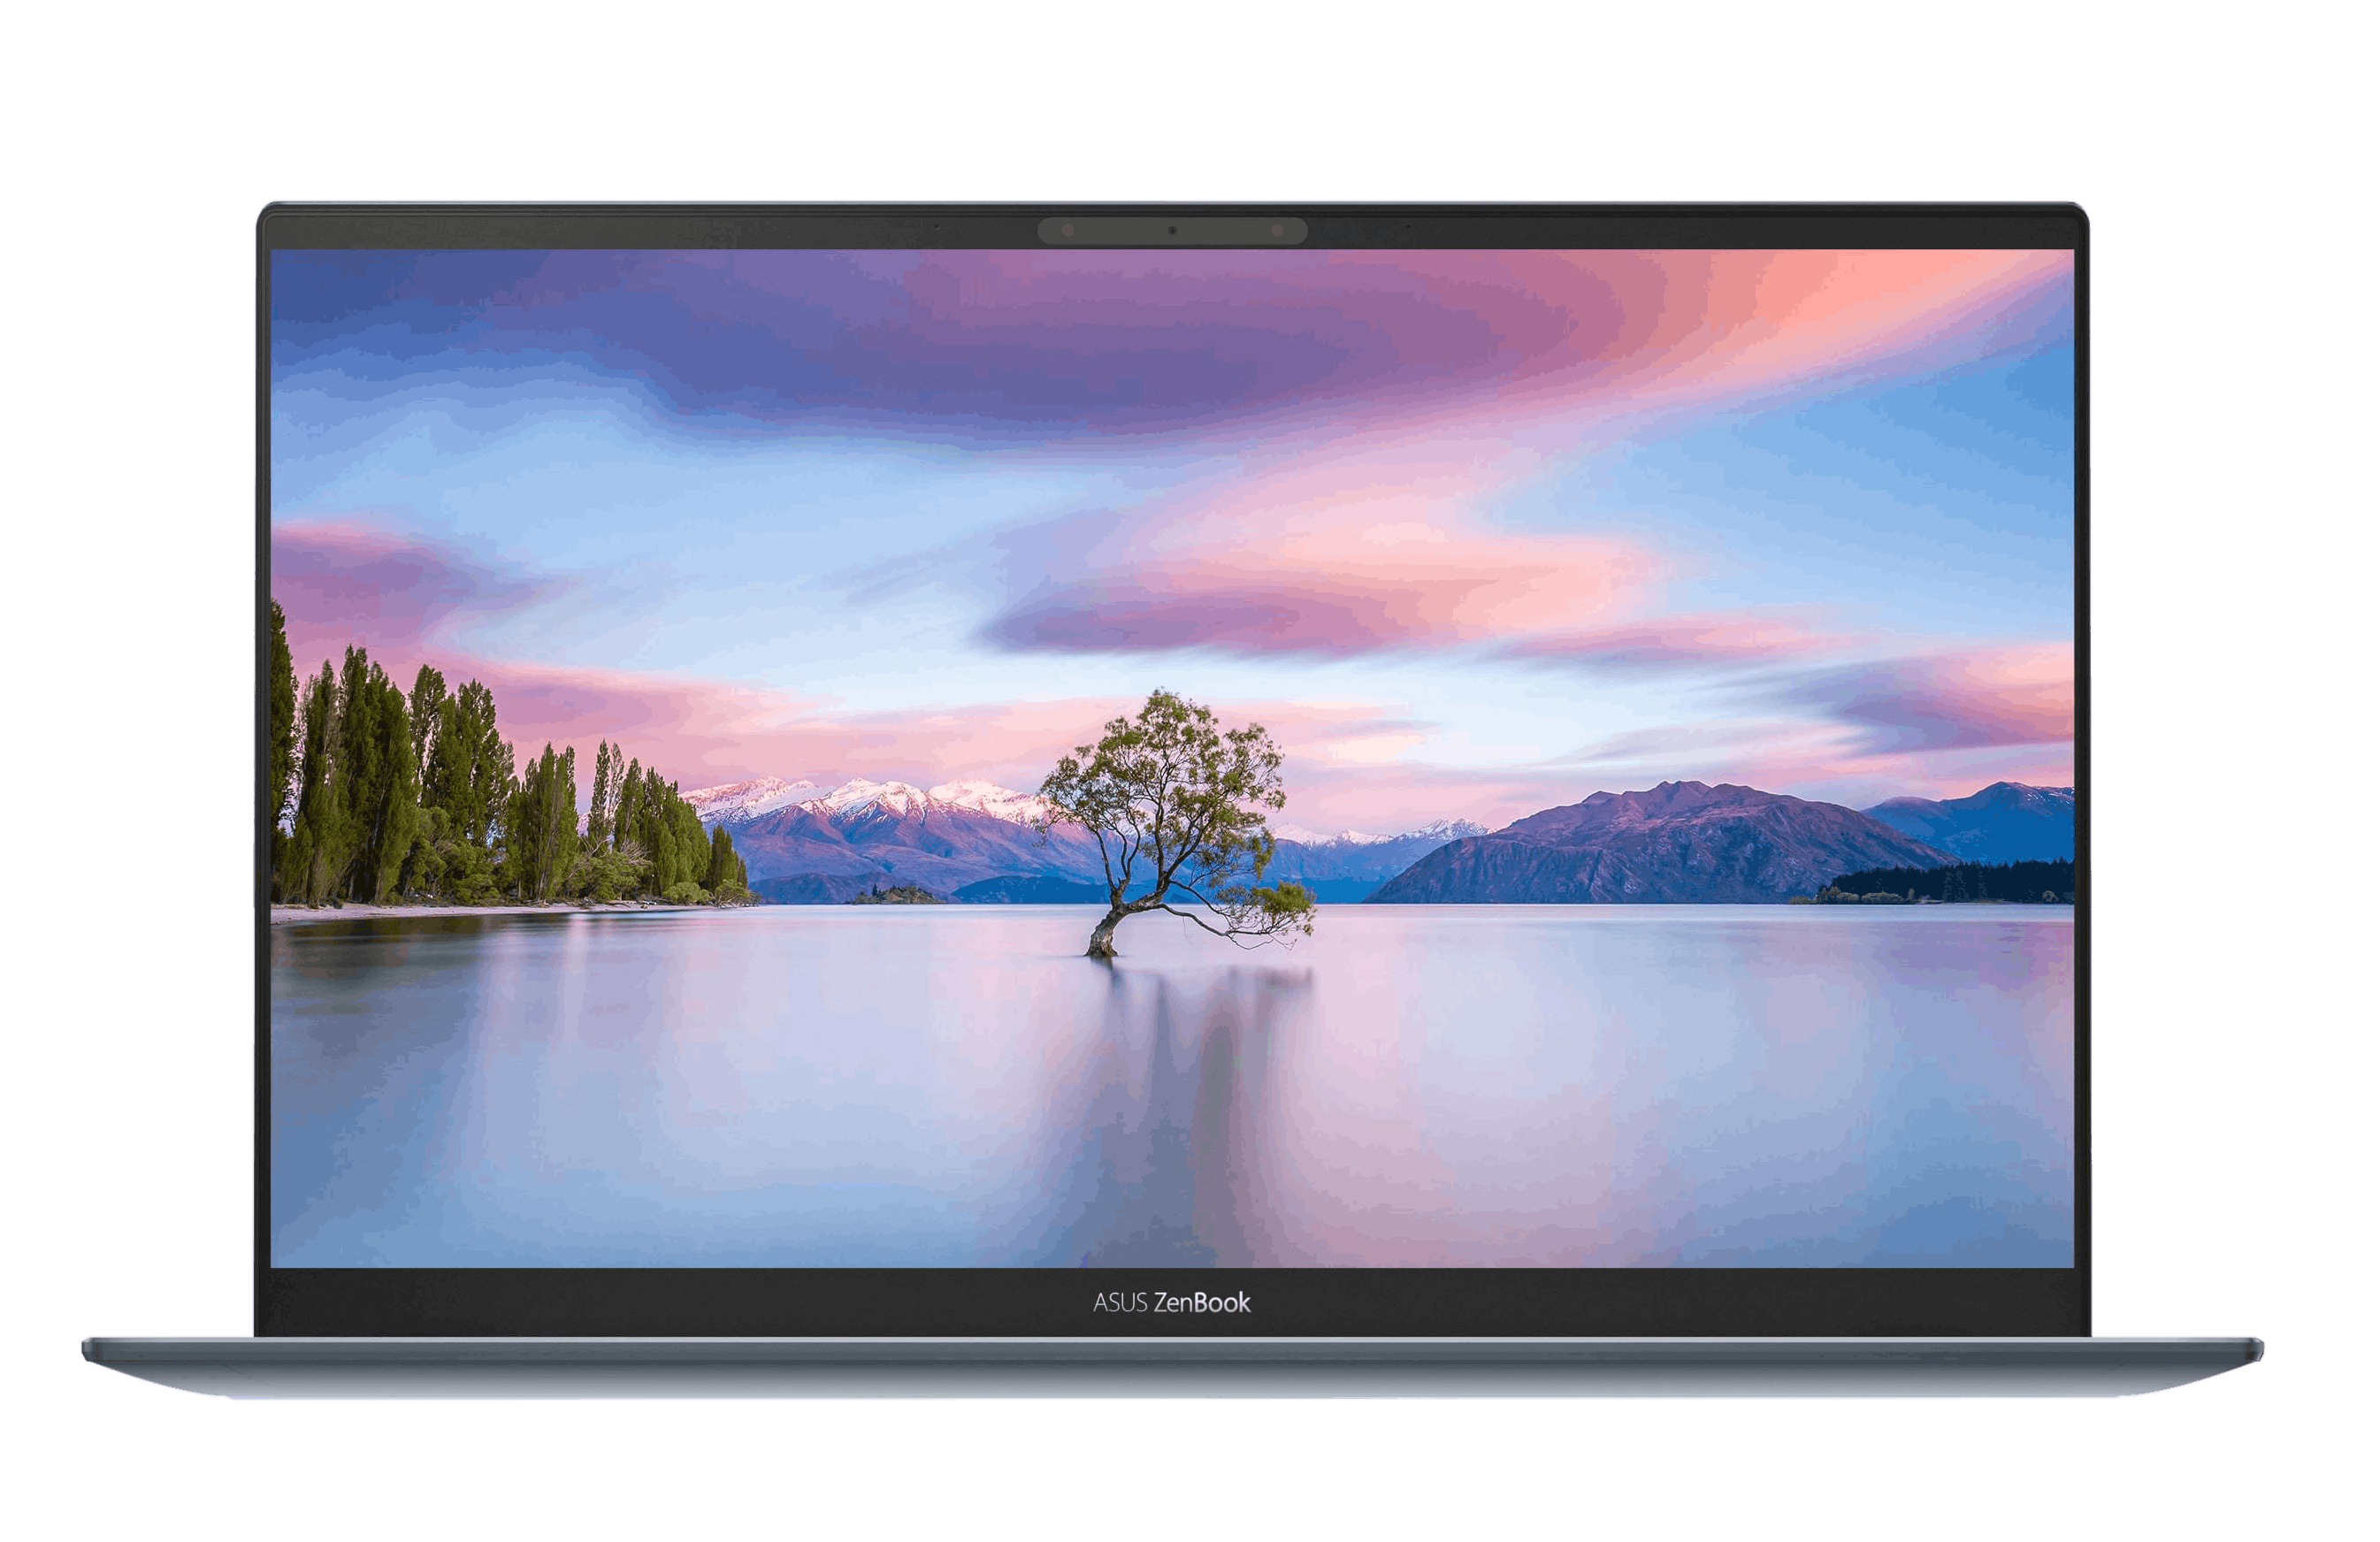 美しい湖の映像を映し出したASUS ZenBook 13の画像